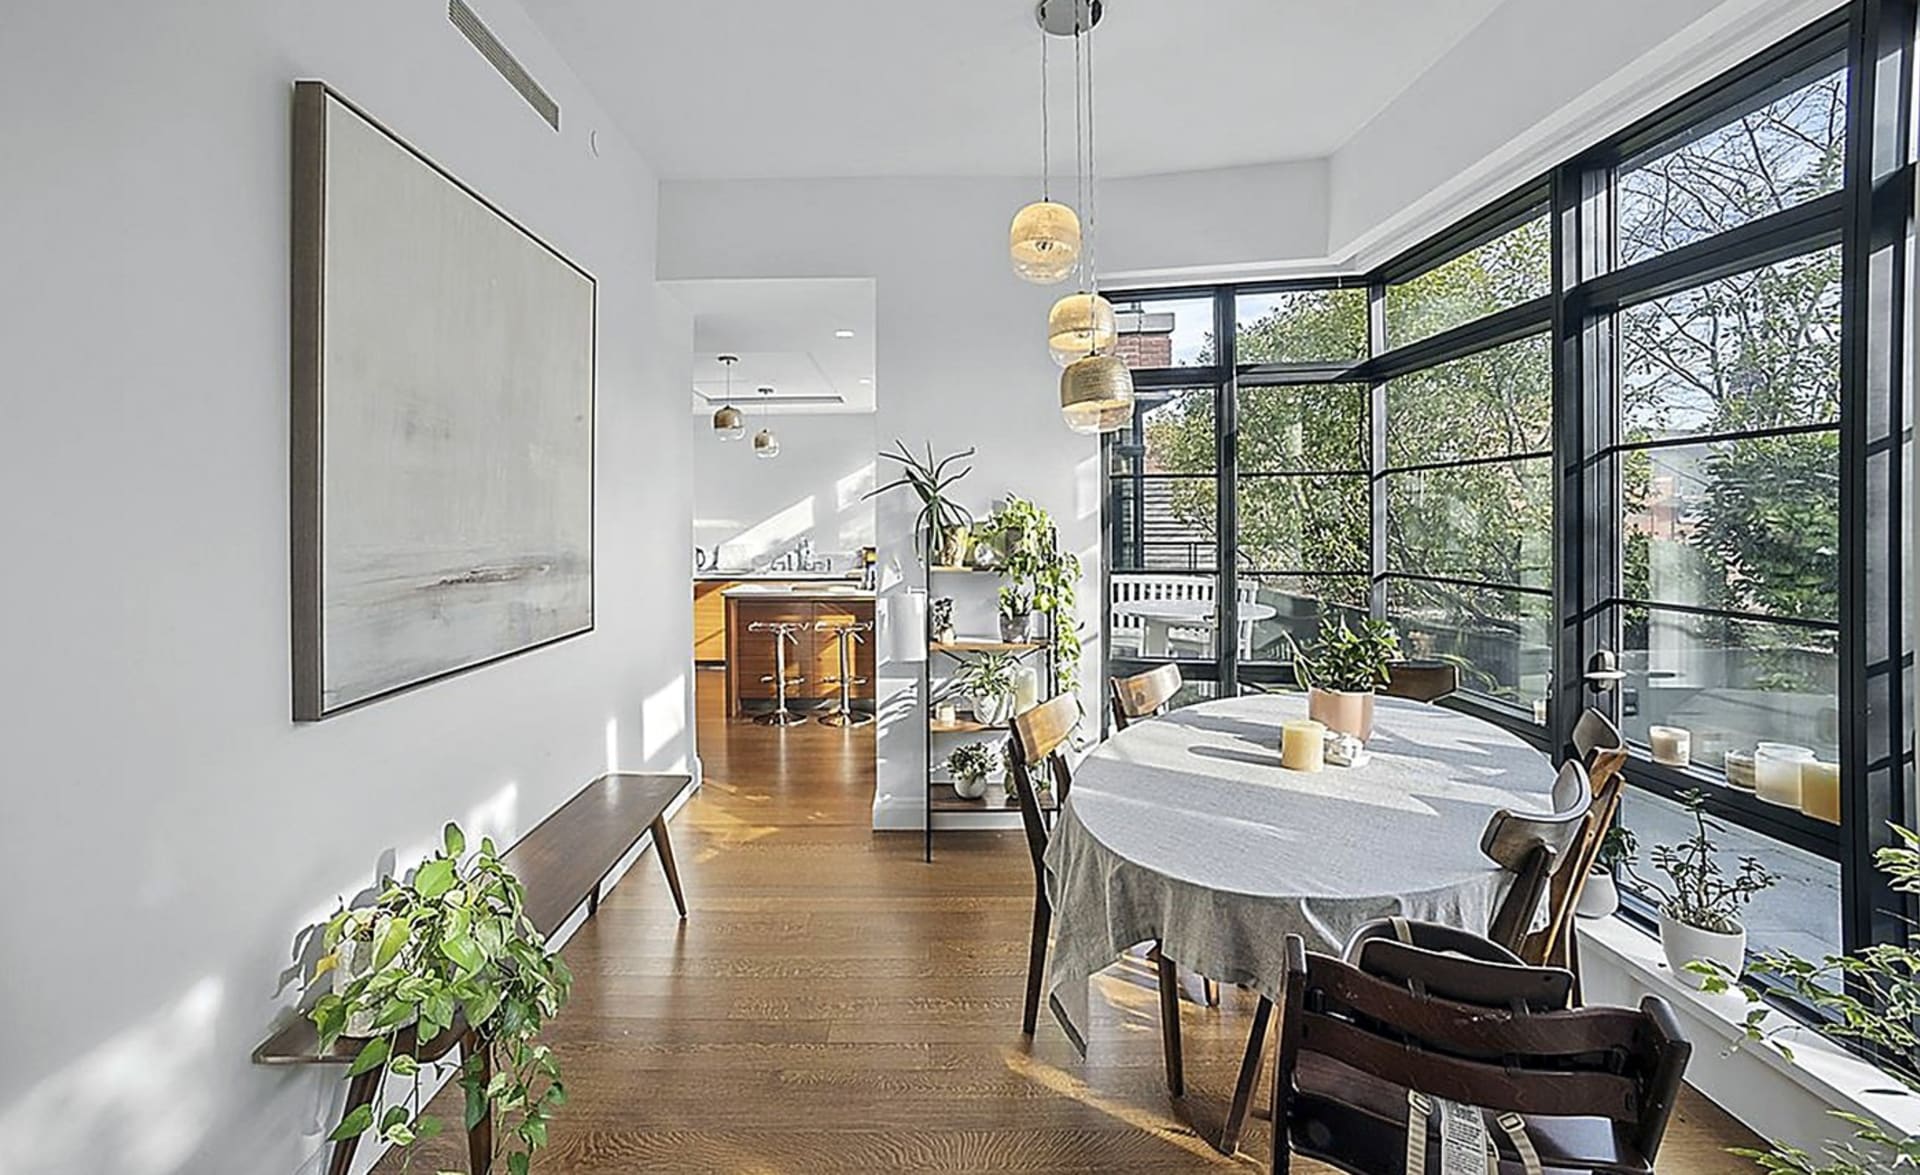  Irina Shayk pronajímá svůj nádherný byt v New Yorku: K dispozici je také prostorný jídelní kout.  Okna od podlahy ke stropu se táhnou po celé délce tohoto bytu.